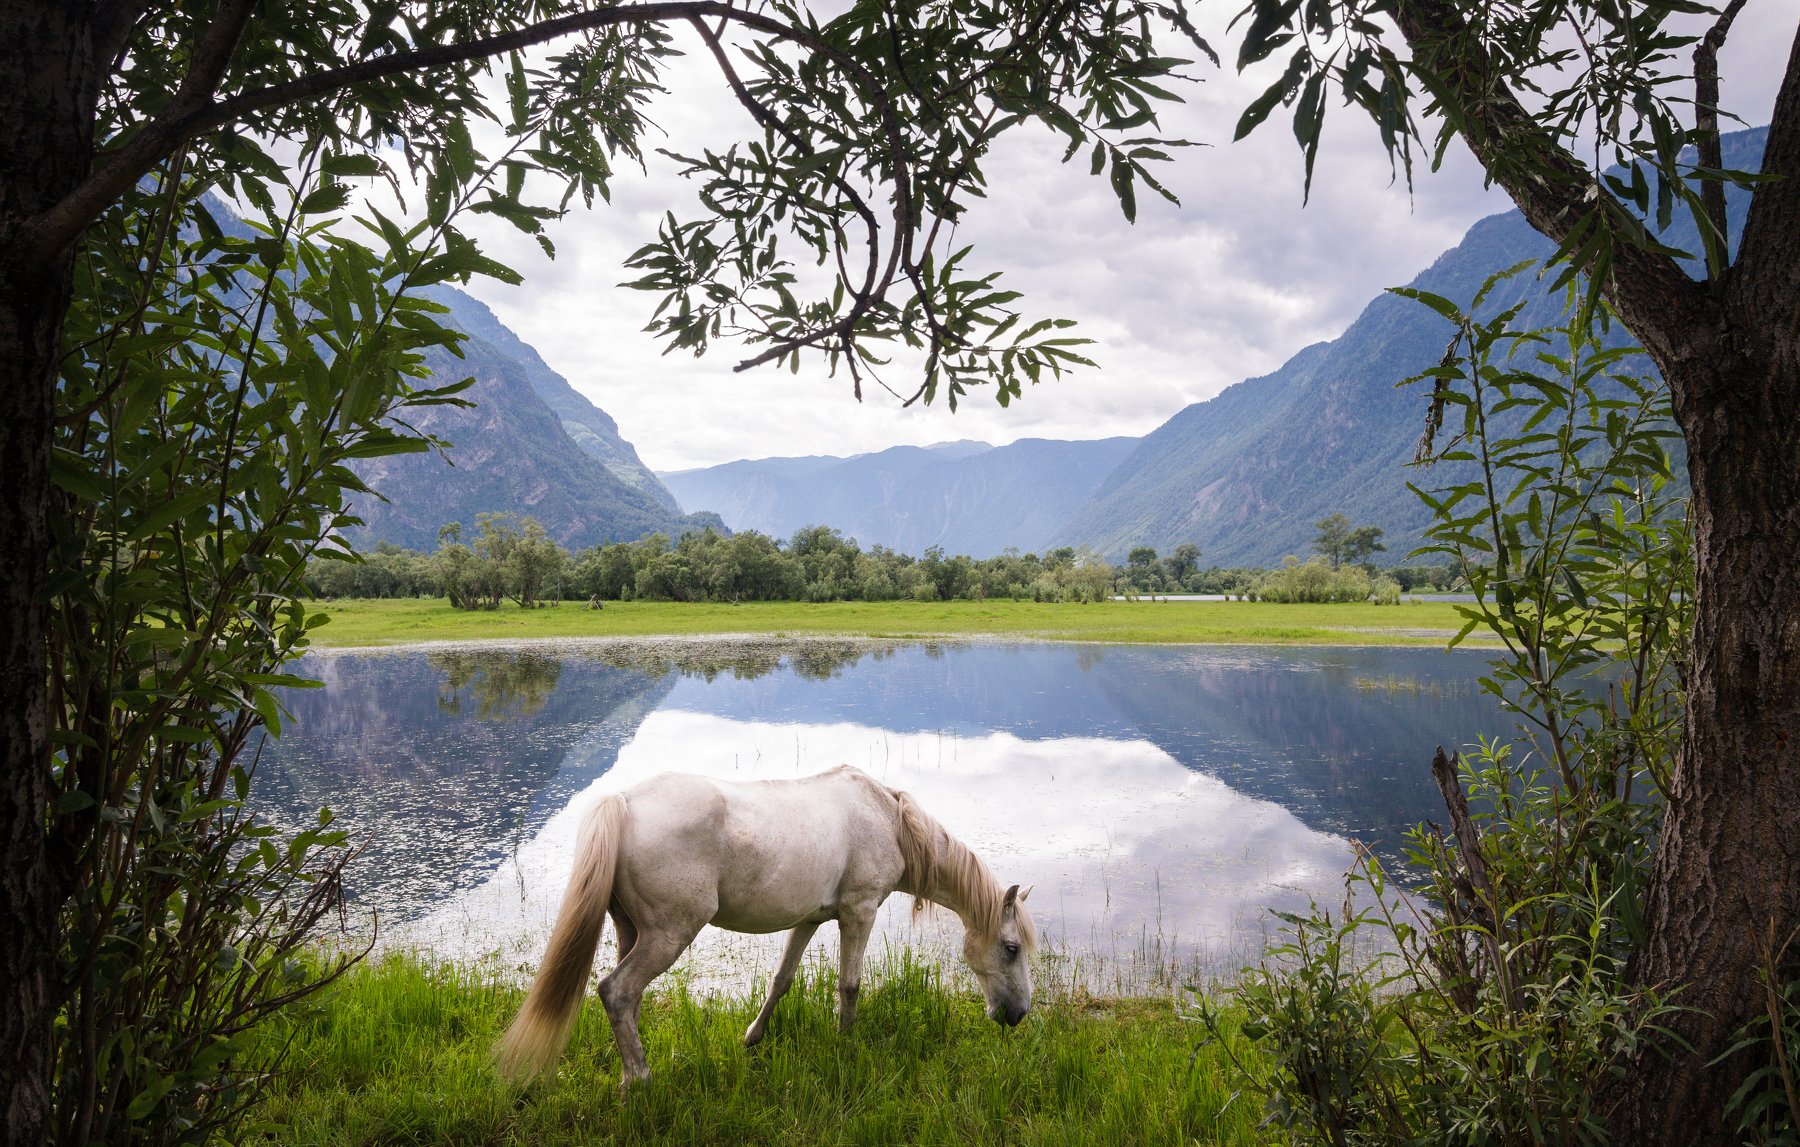 Алтай, животные, лошадь, Россия, пейзаж, озеро, горы, отражение, Голубев Алексей